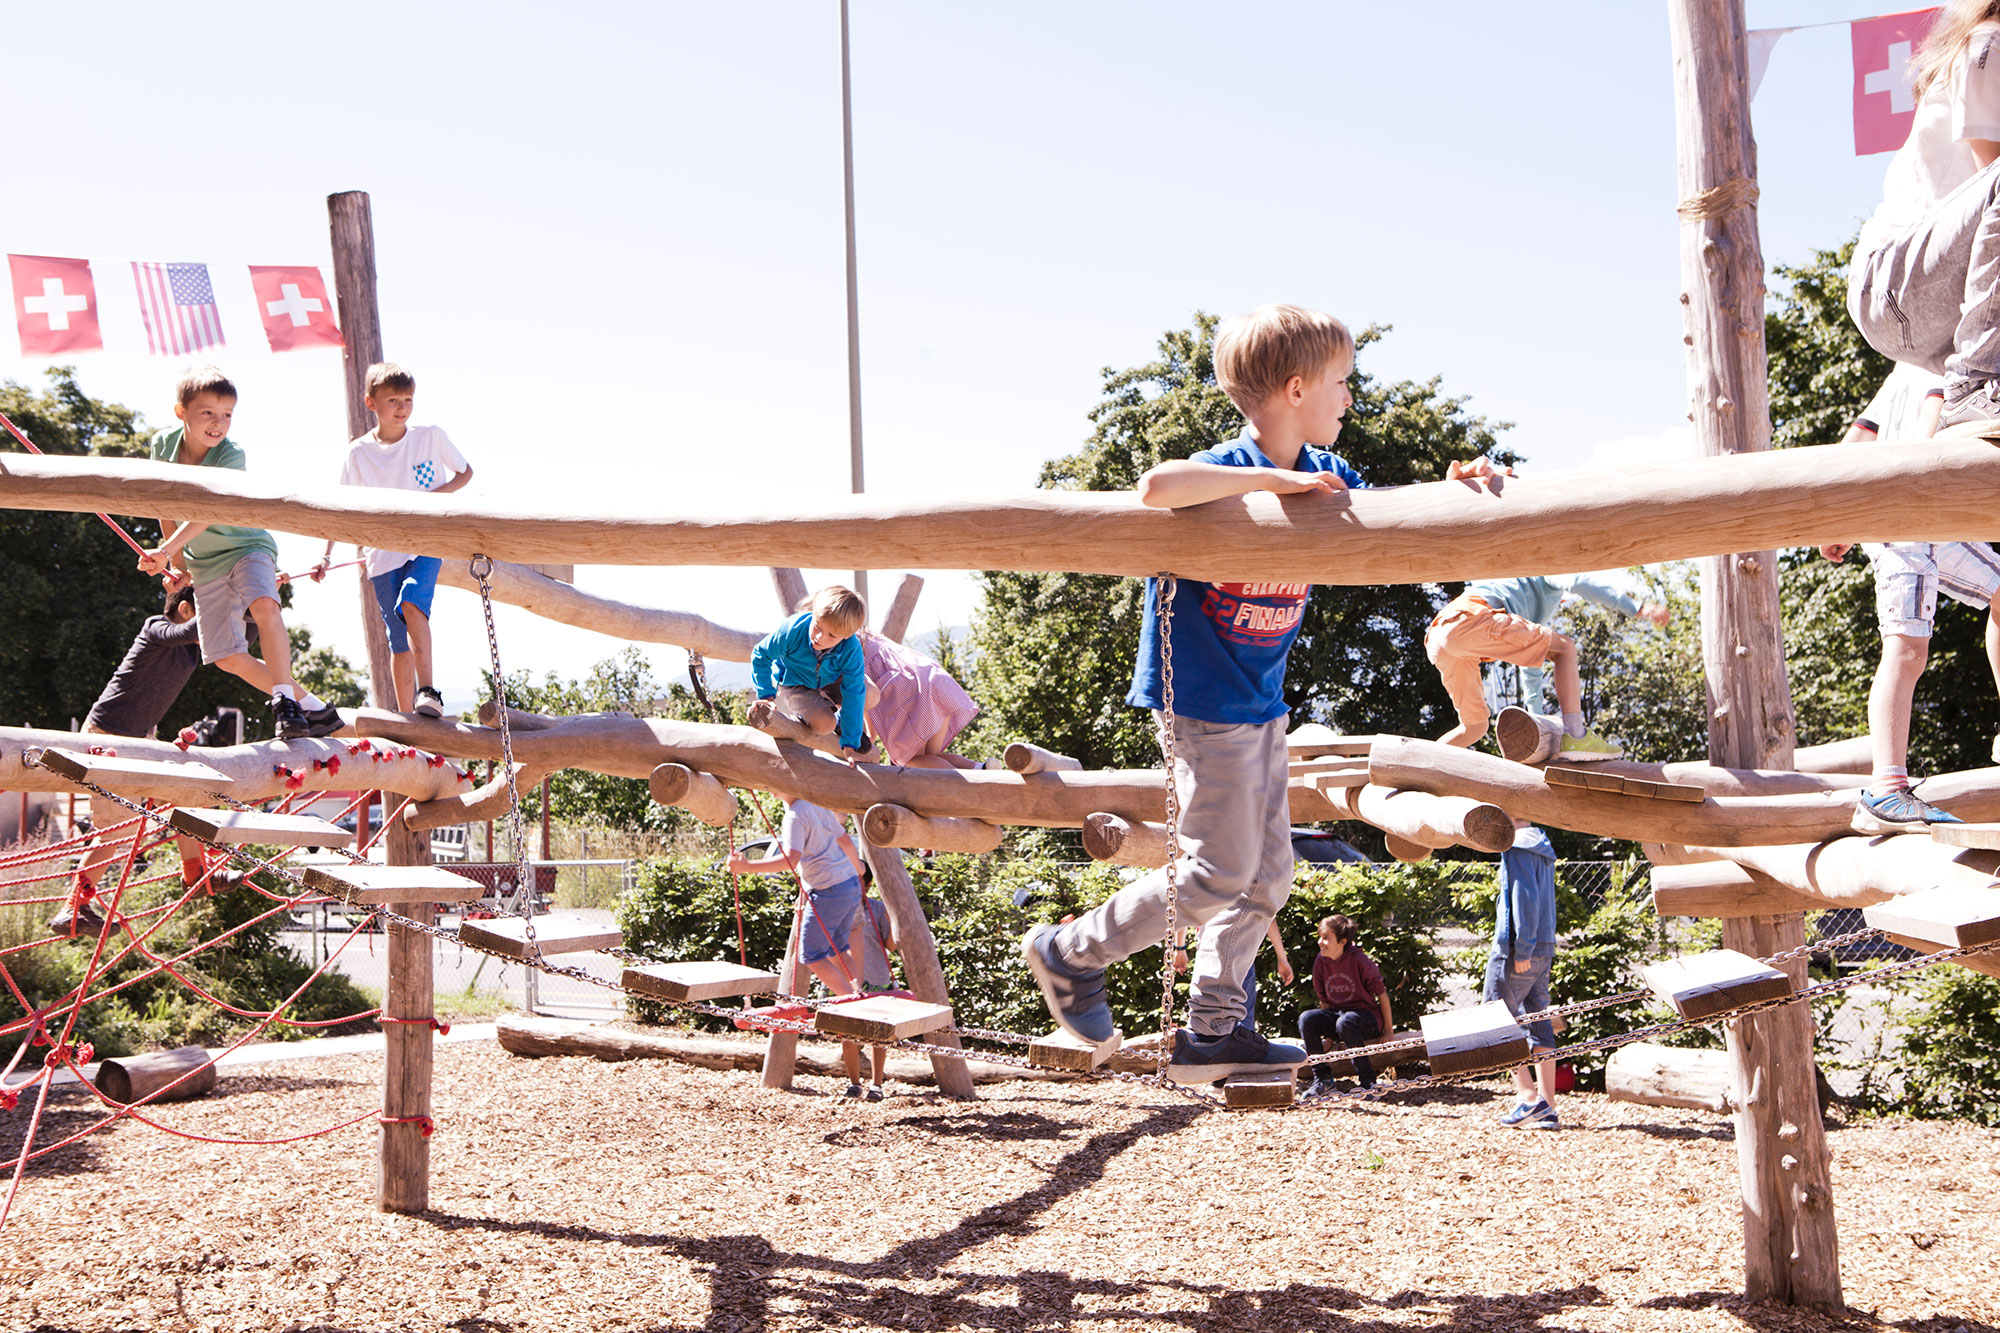 Kinder spielen draussen auf dem Pausenplatz auf dem Klettergerüst bei sonnigem Wetter.	